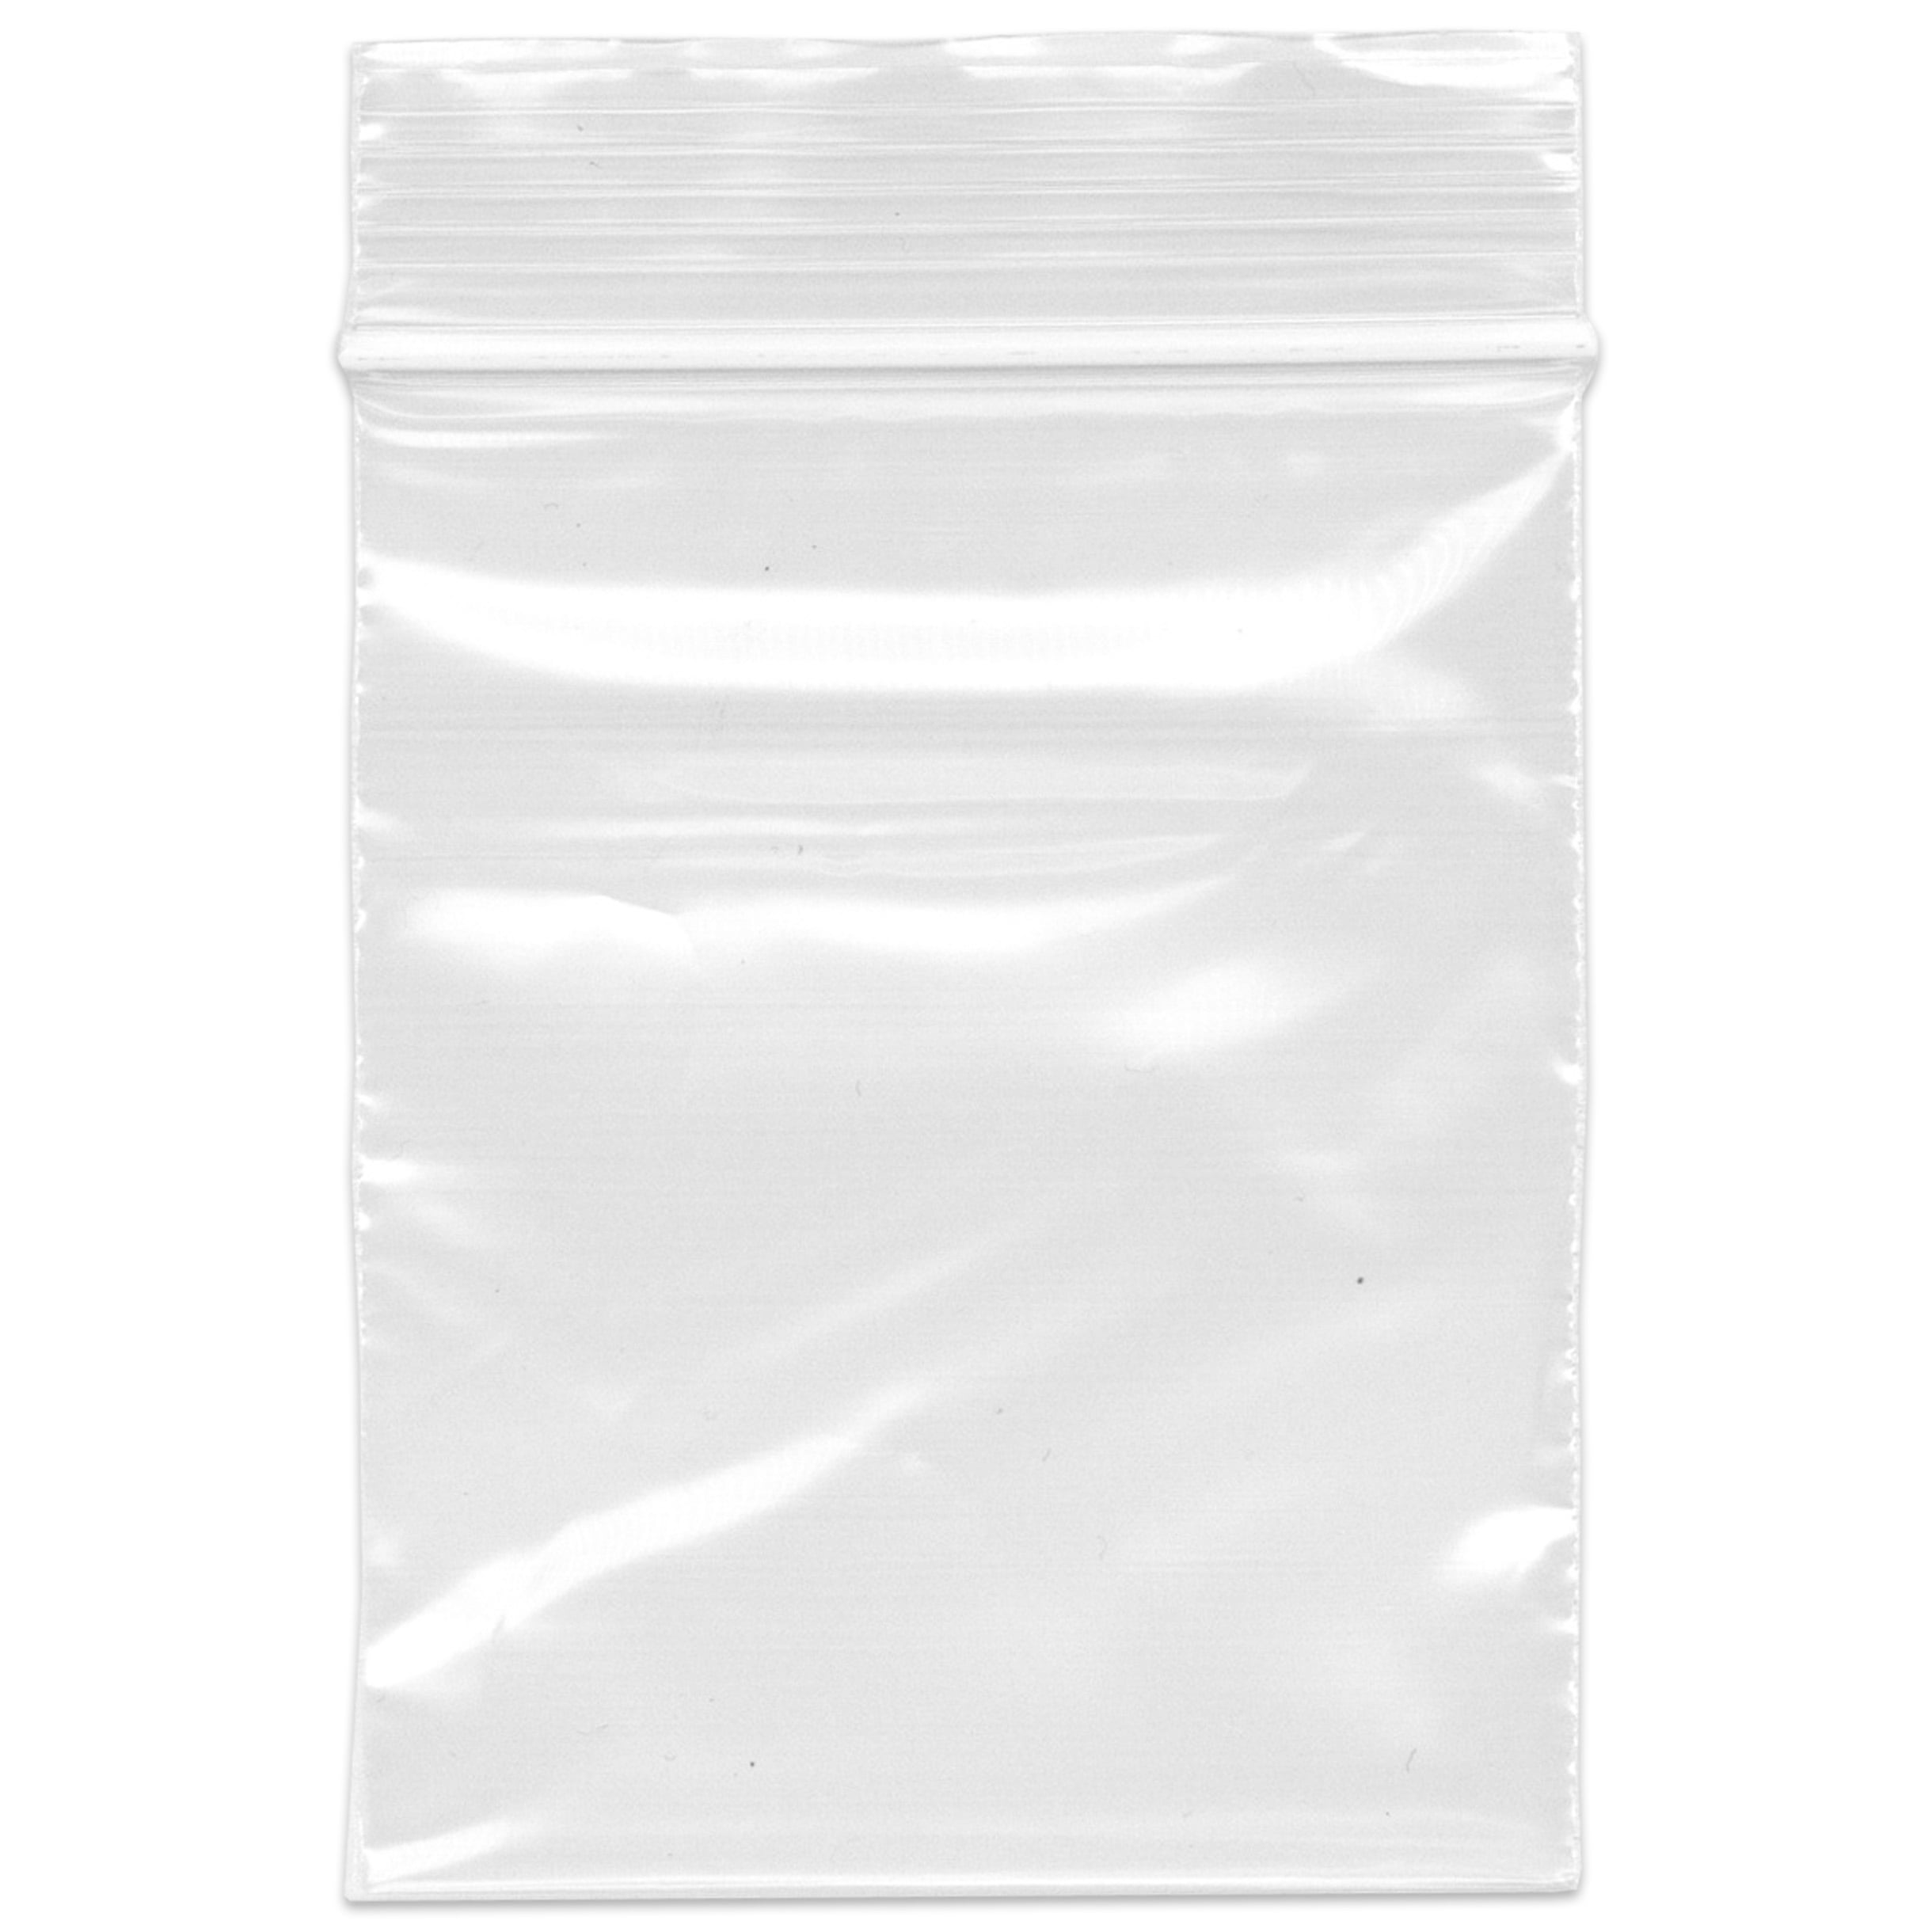 Vrinda Reclosable Plastic Bag 1-1/2x2 2mil Zip Lock Pack of 1000 